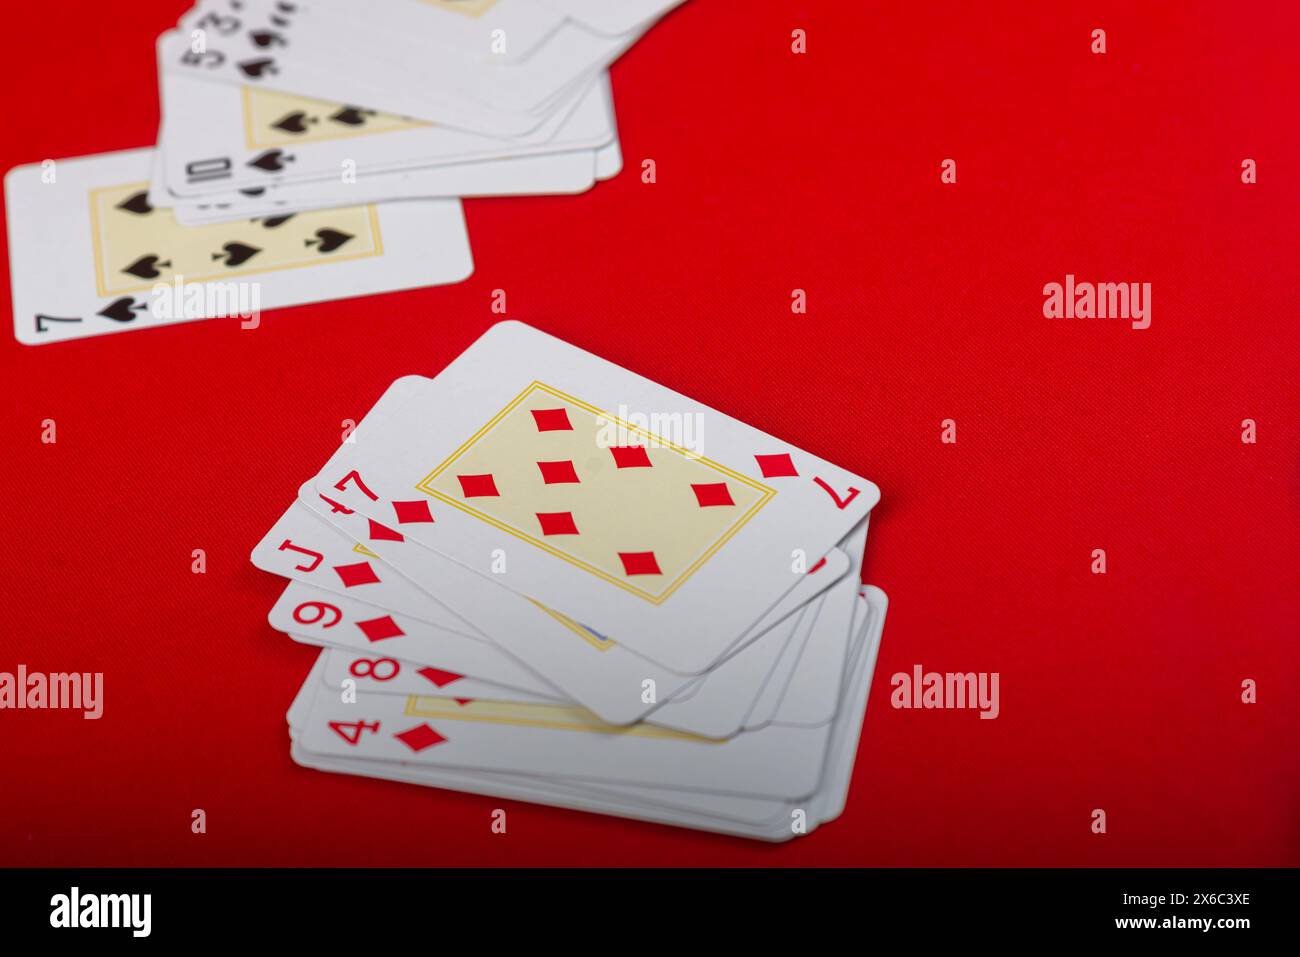 Diverses cartes à jouer disposées sur le plateau. Isolé sur fond rouge. Banque D'Images